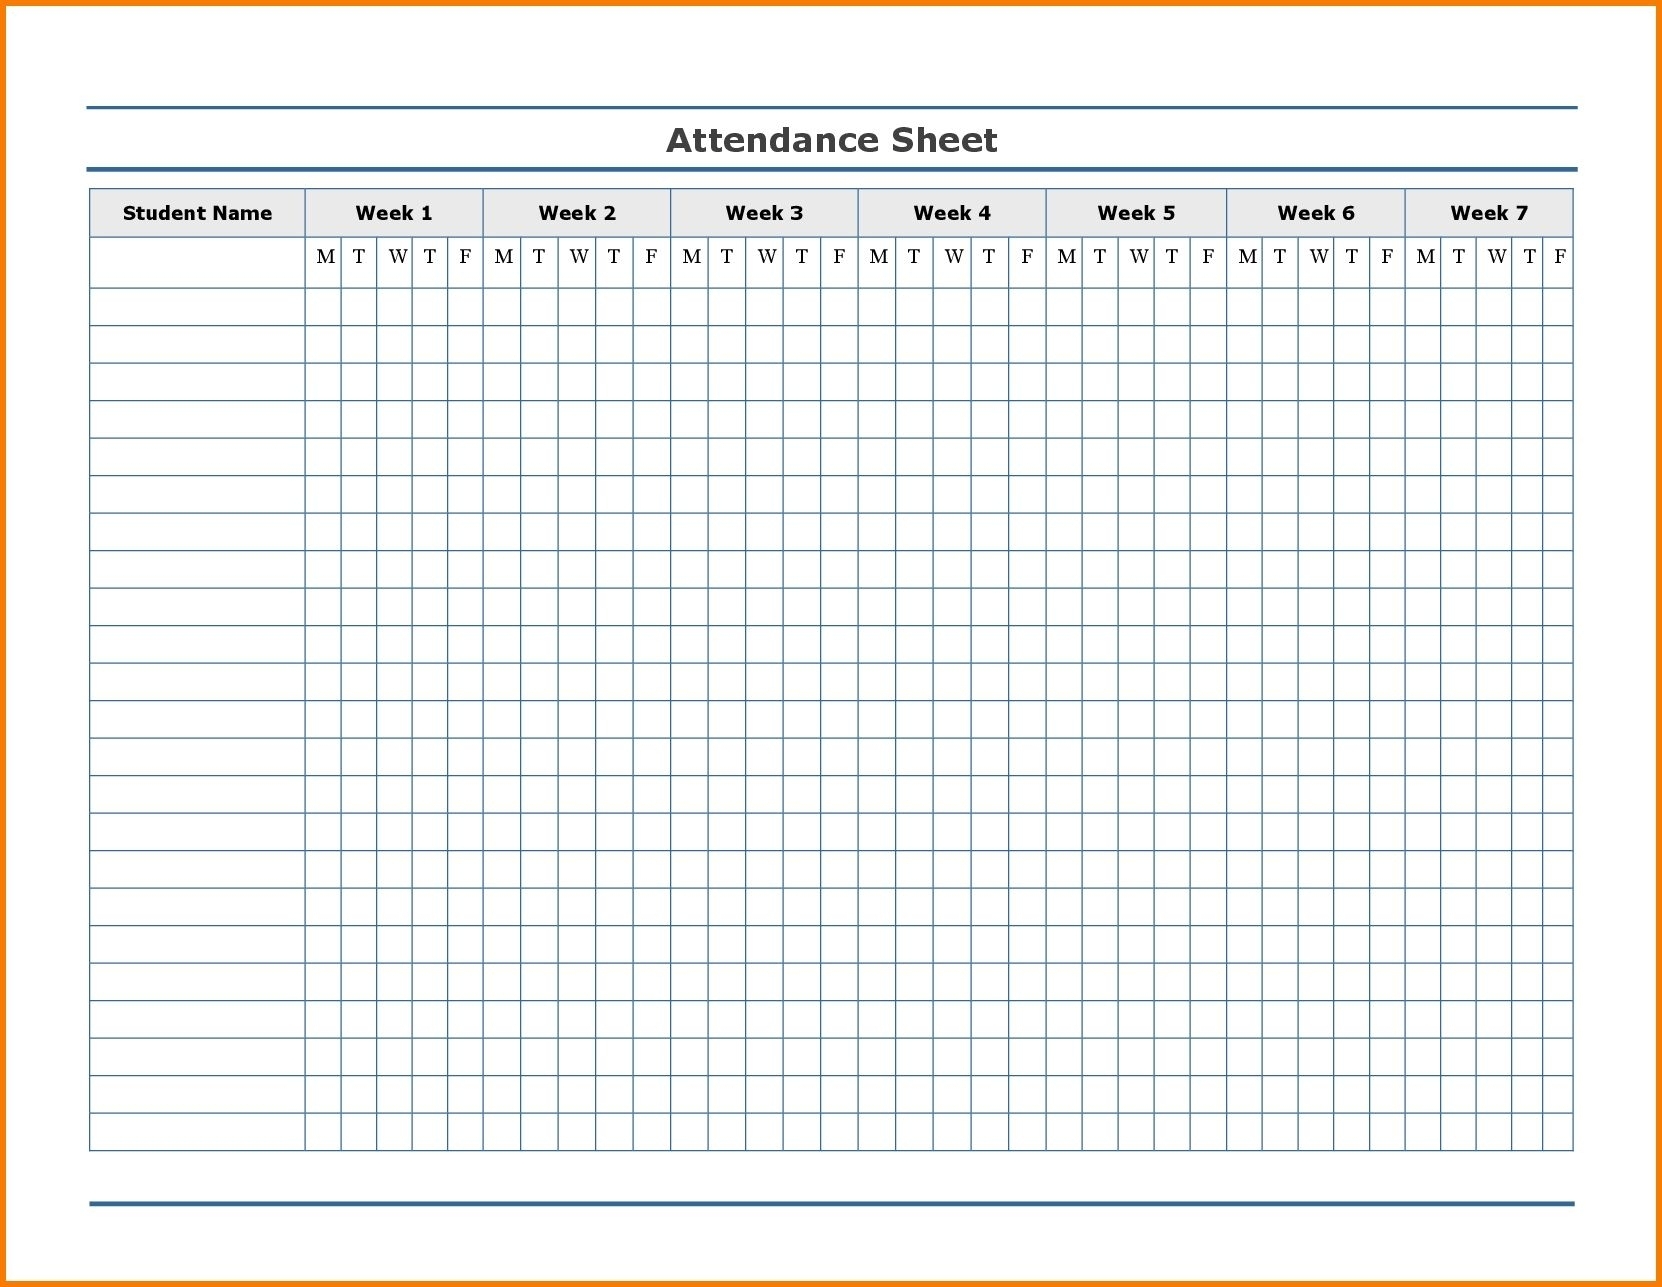 Get Attendance Report Calendar Free